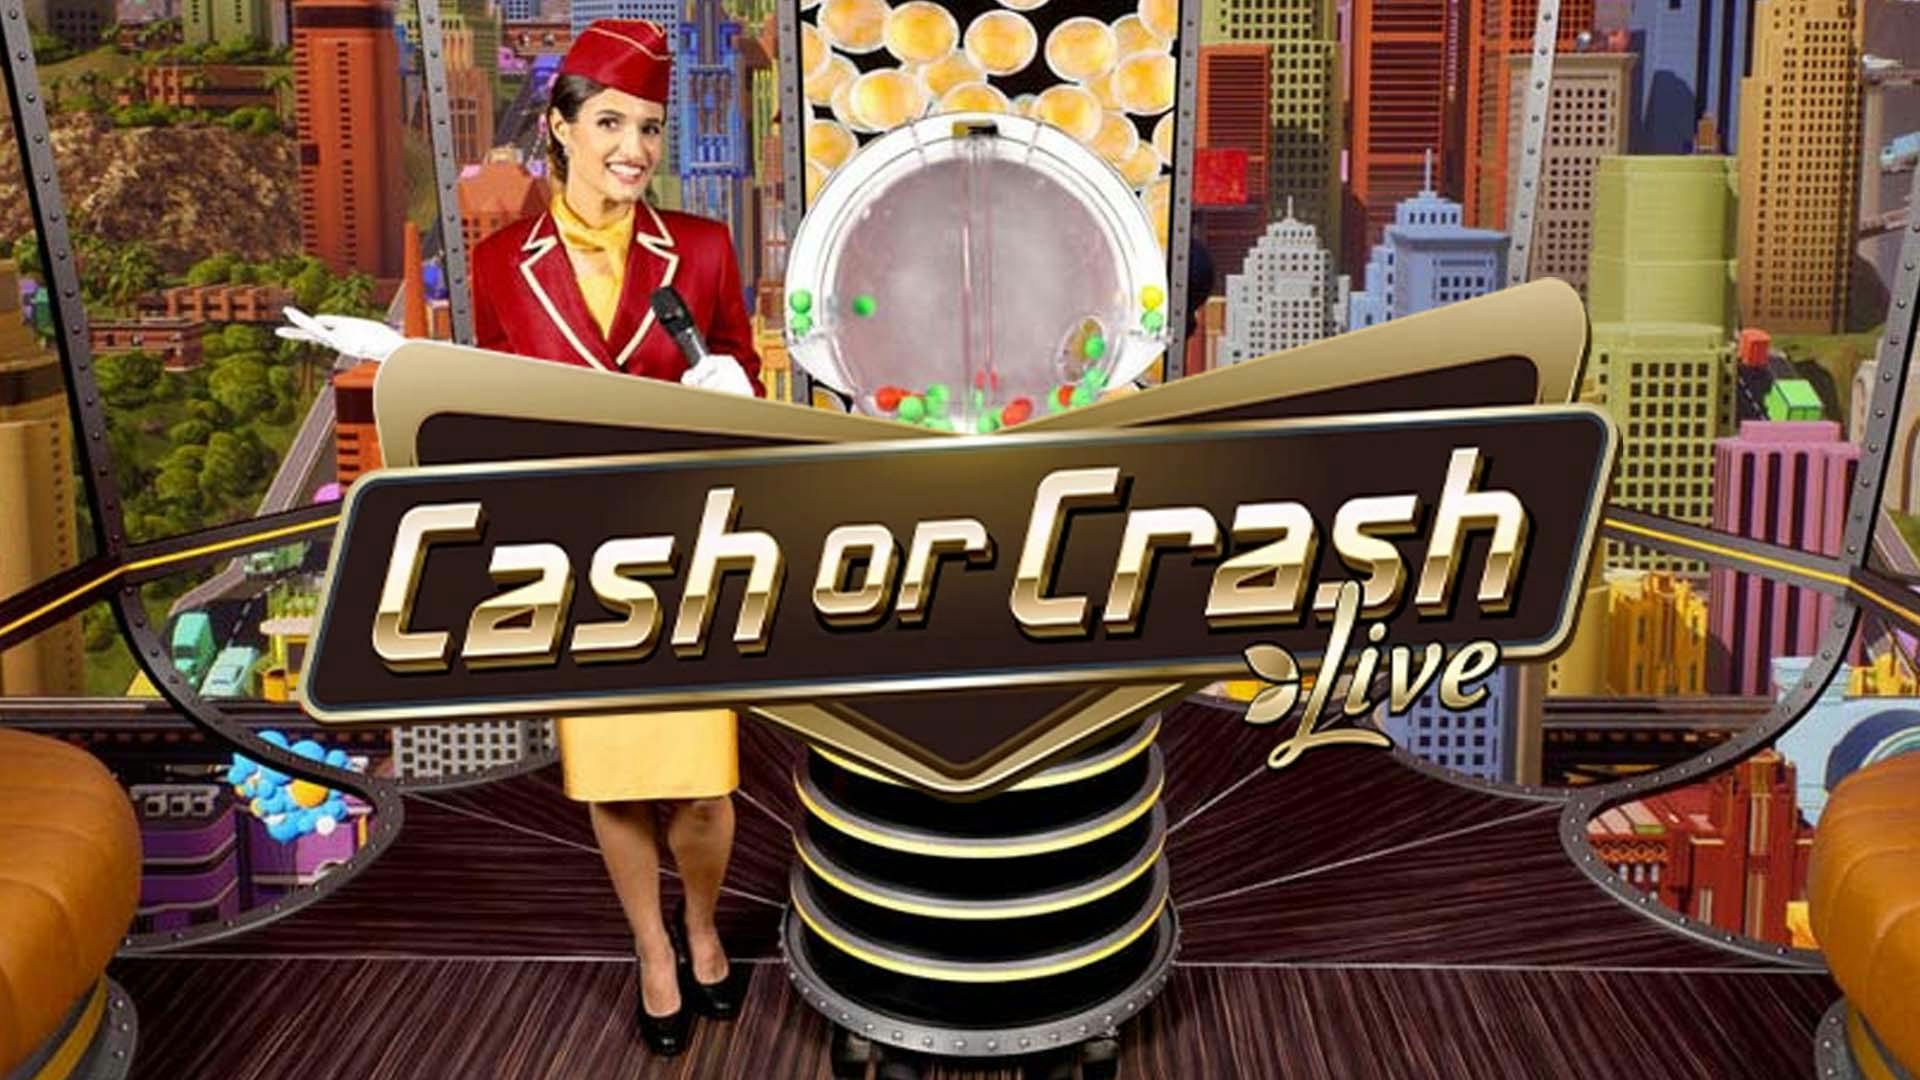 Cash Or Crash Live